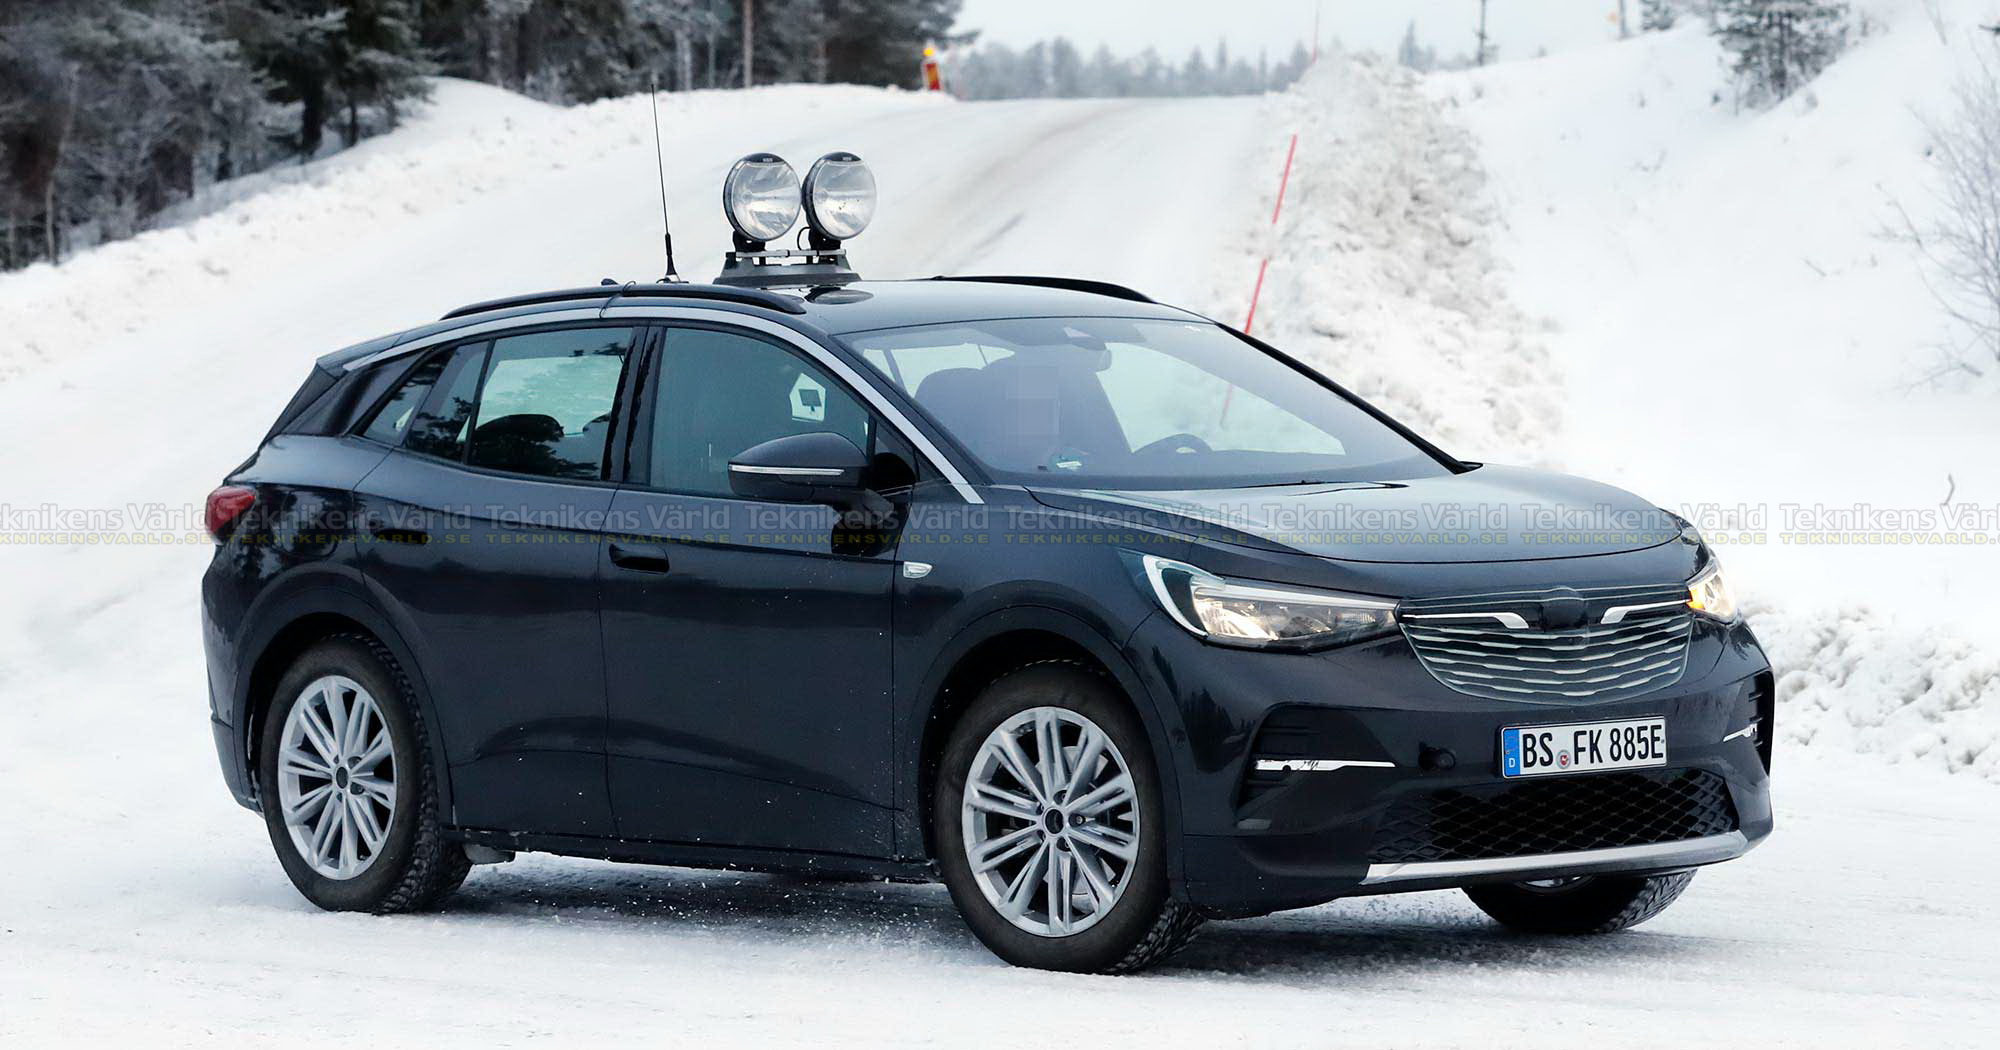 Volkswagen ID.4 på besök i Sverige – utklädd till Opel